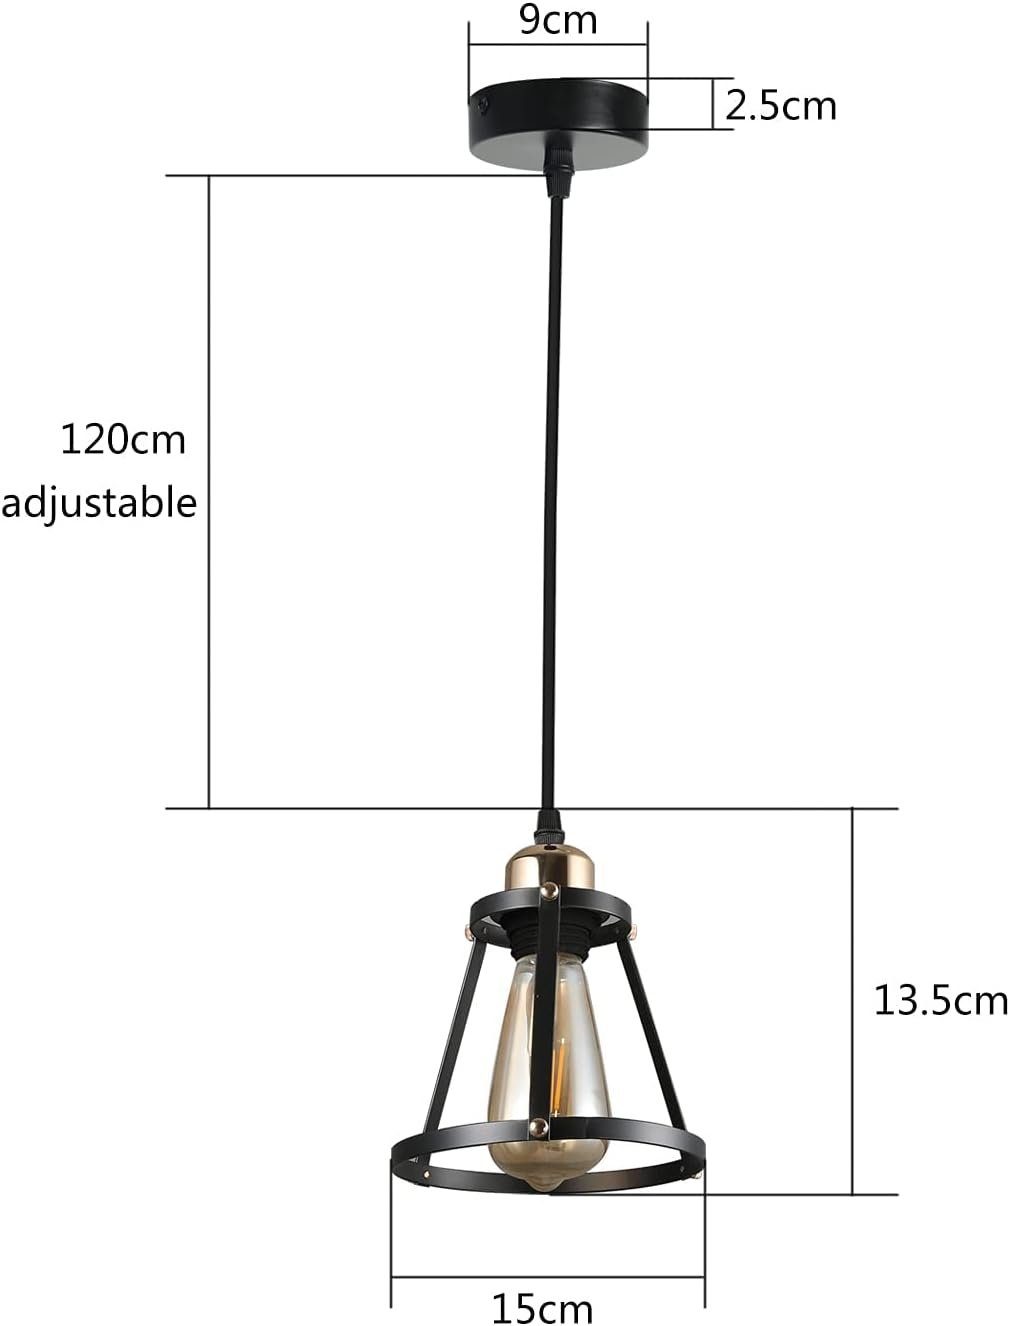 Esstischlampe Vintage 1-flammig Schwarz 120cm Pendelleuchte LED Industrial ZMH Metall